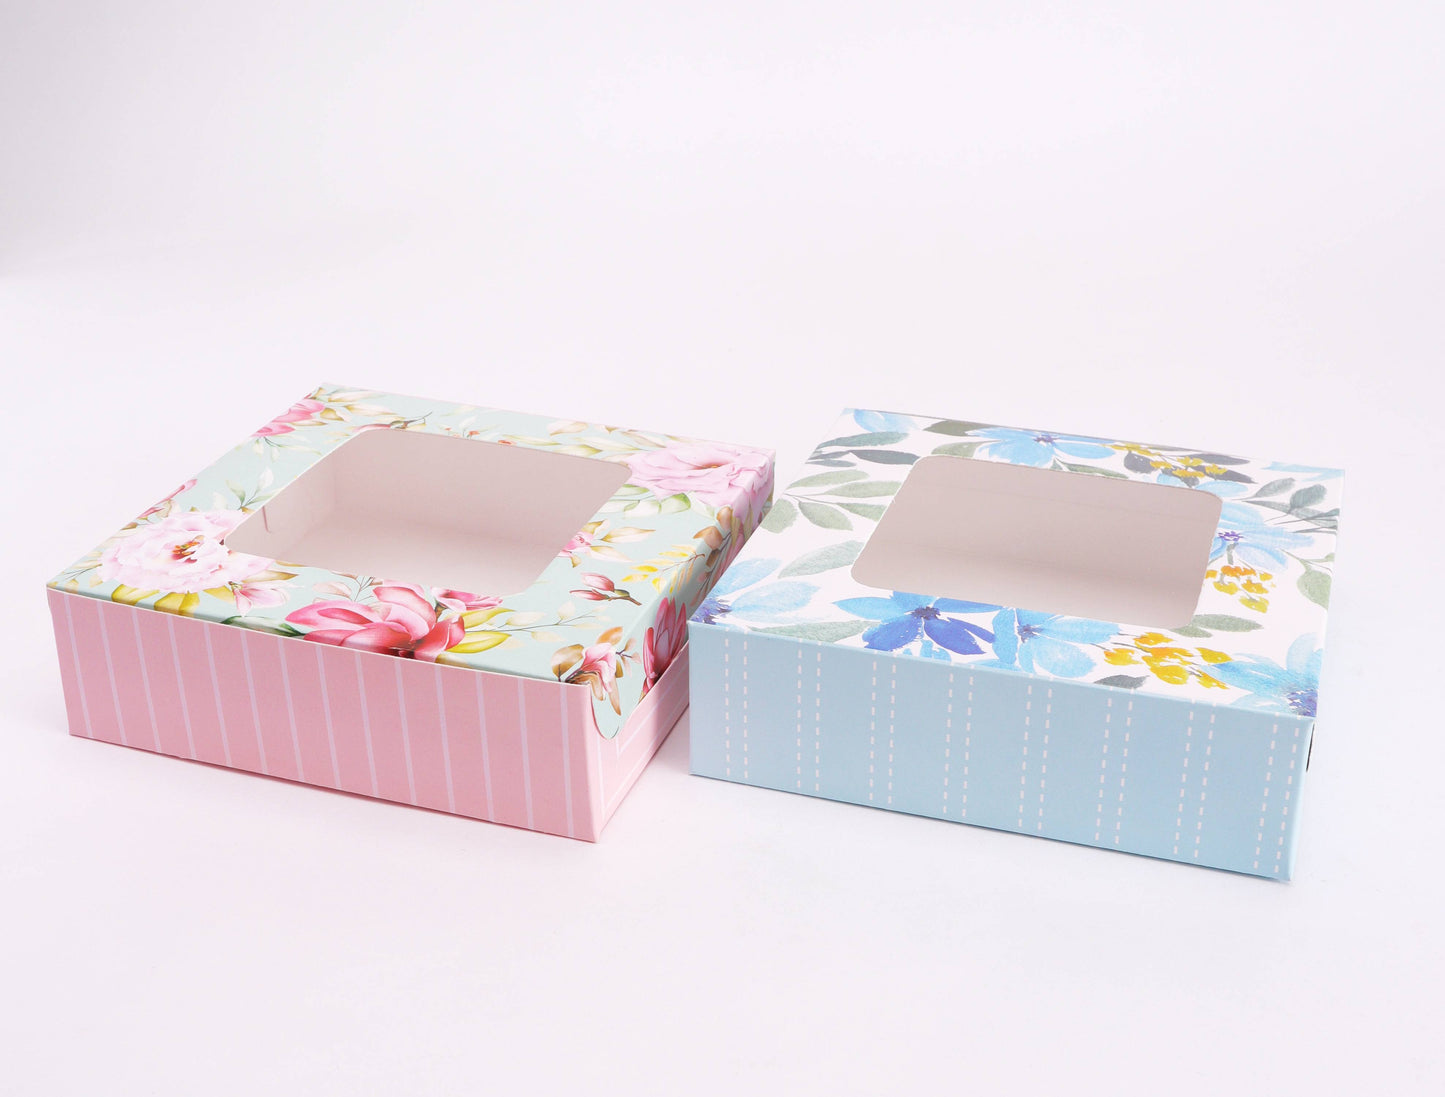 4 Brownie Printed Floral Striped Box (Pack of 10)